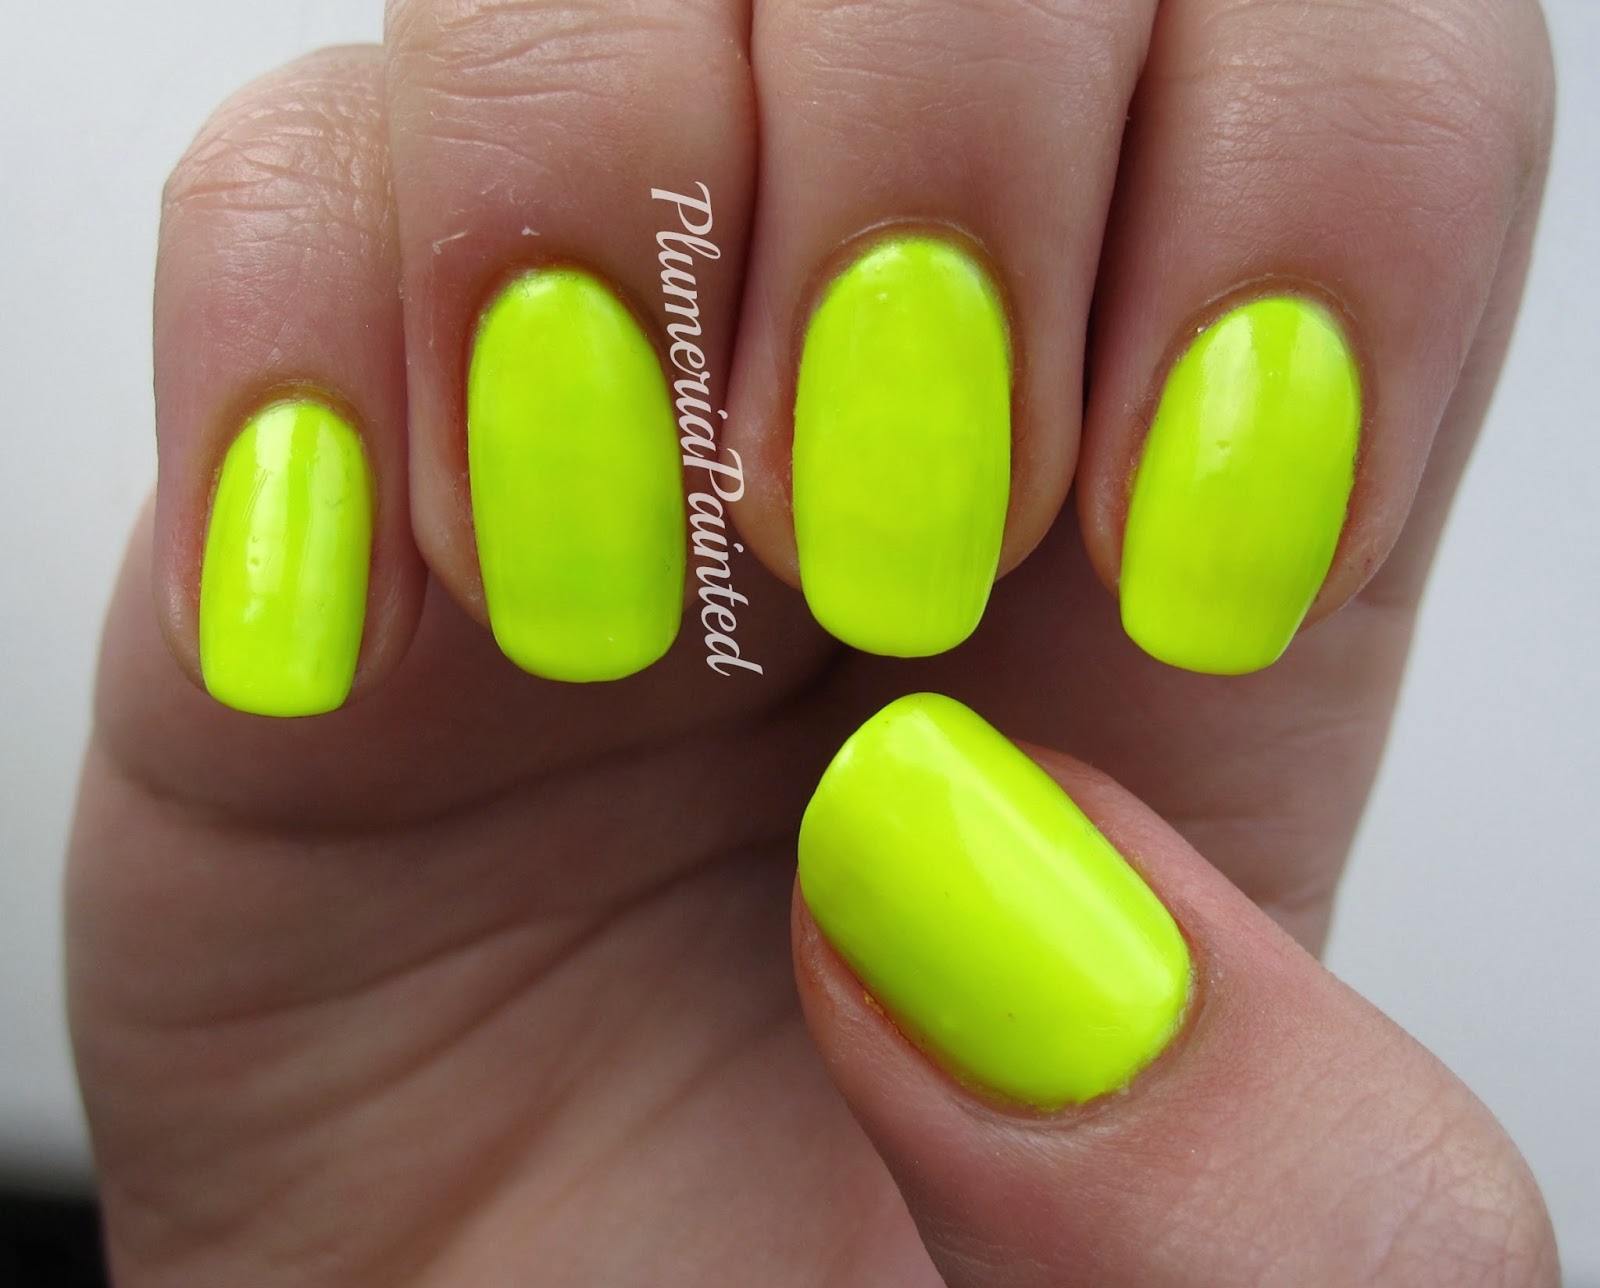 2. Bright Yellow Nail Polish - wide 7